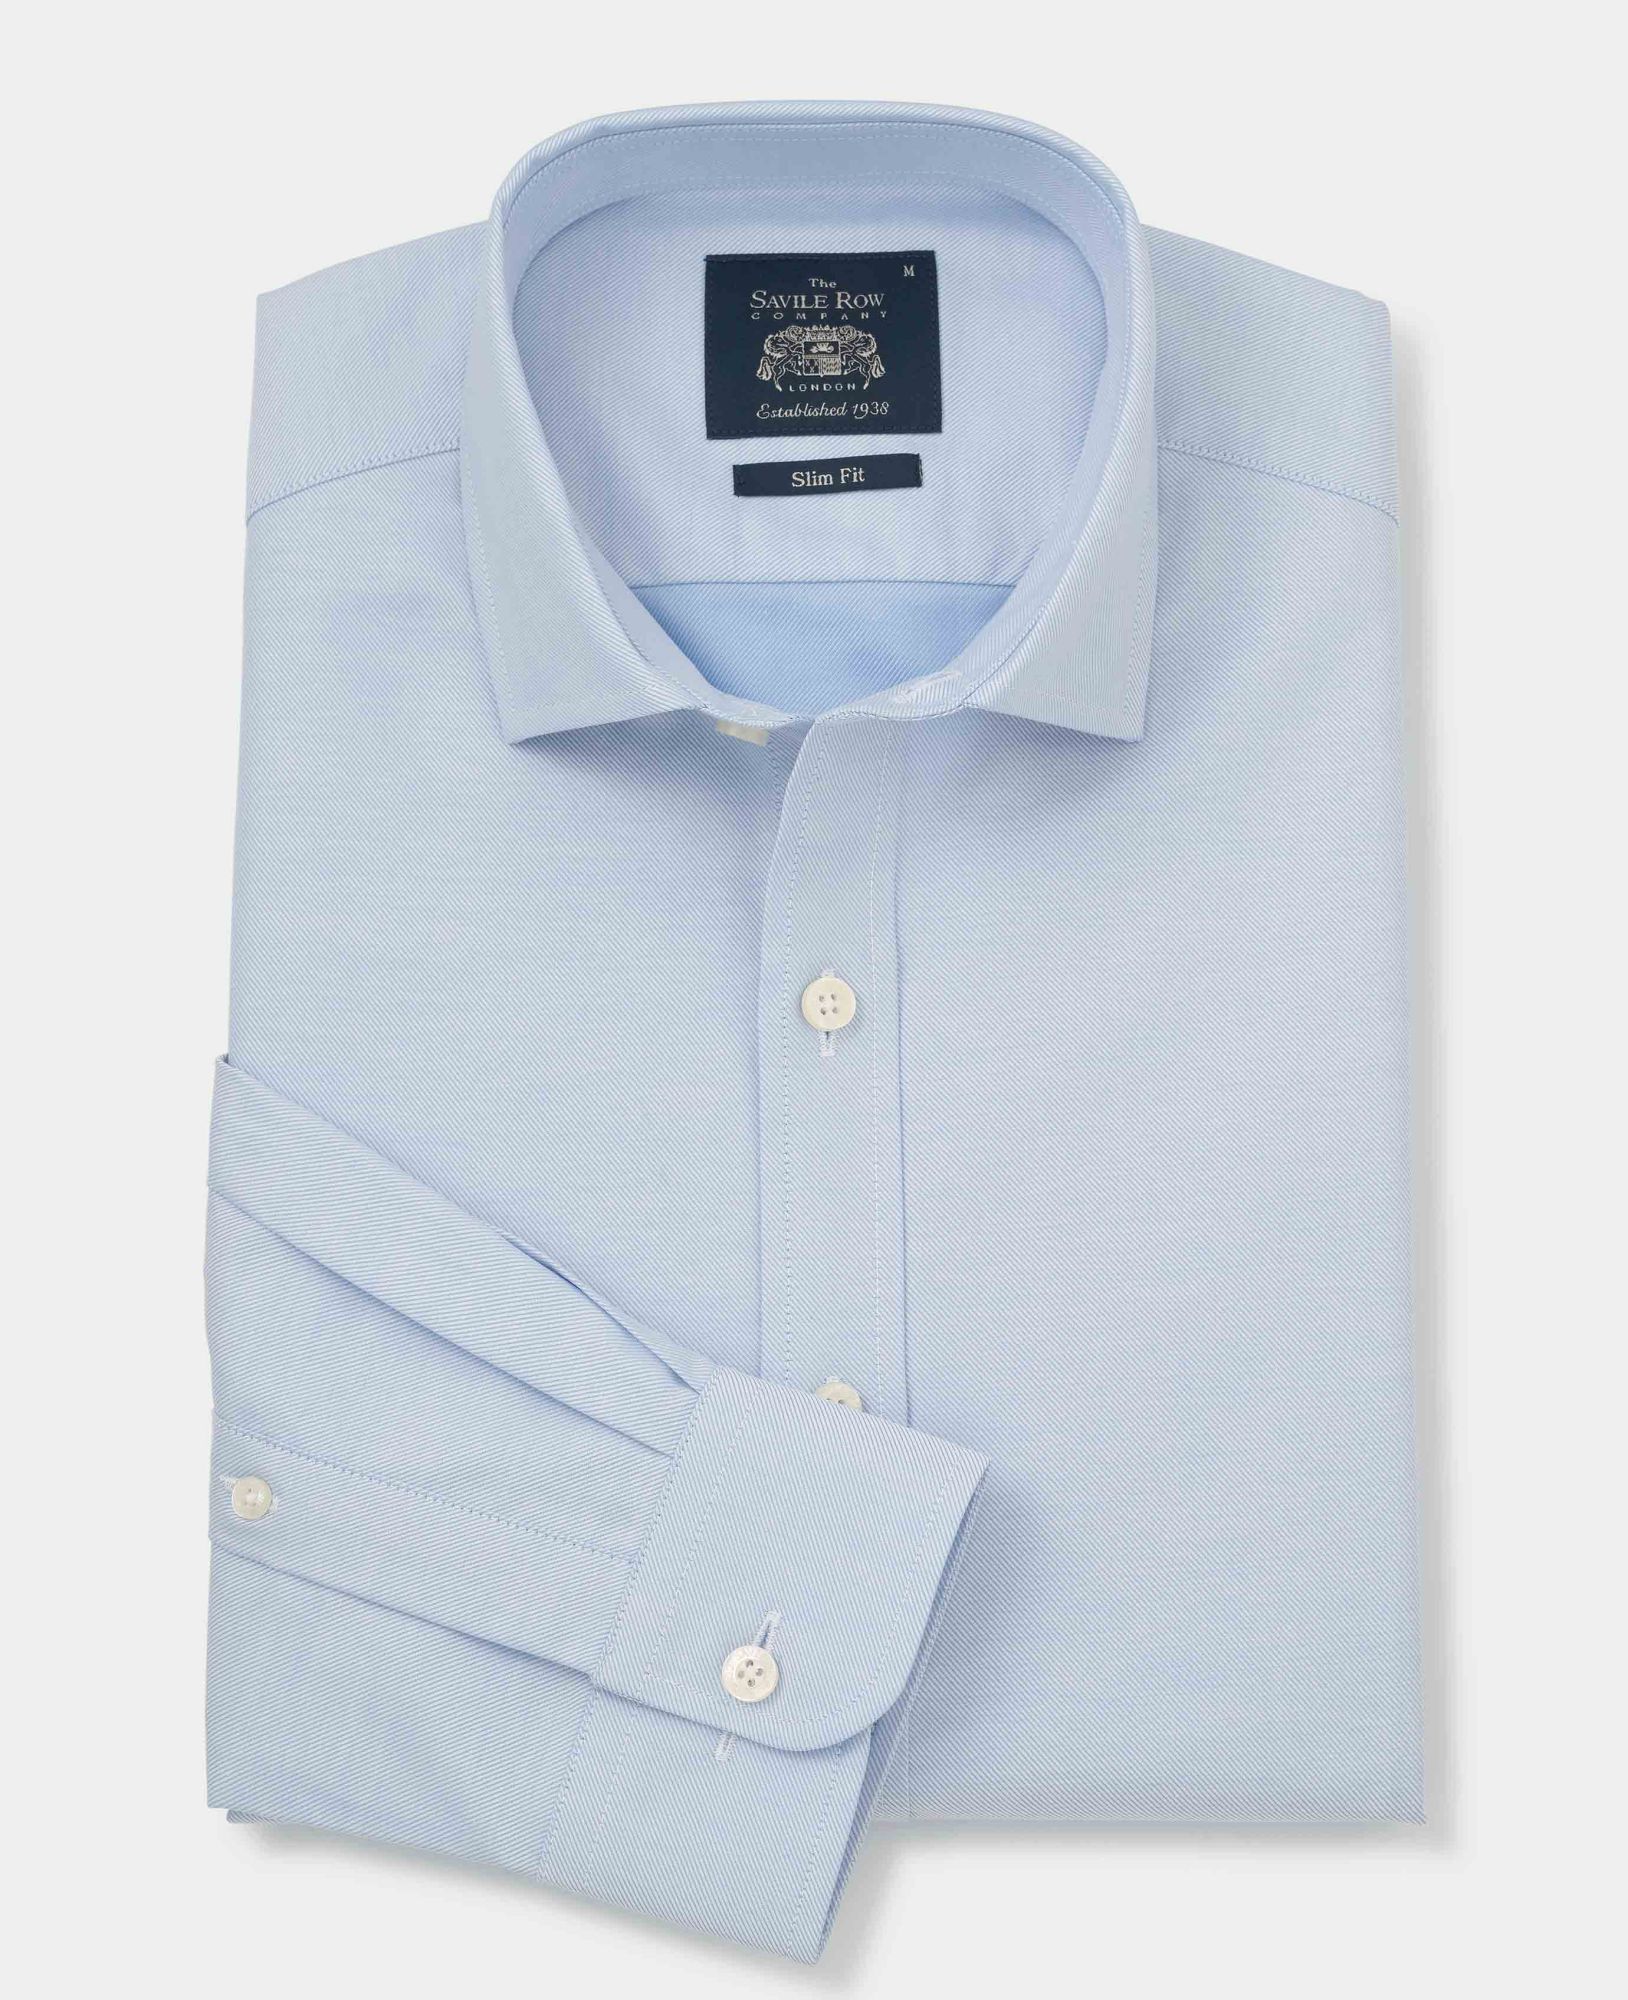 Blue Twill Slim Fit Shirt - Single Cuff M Standard